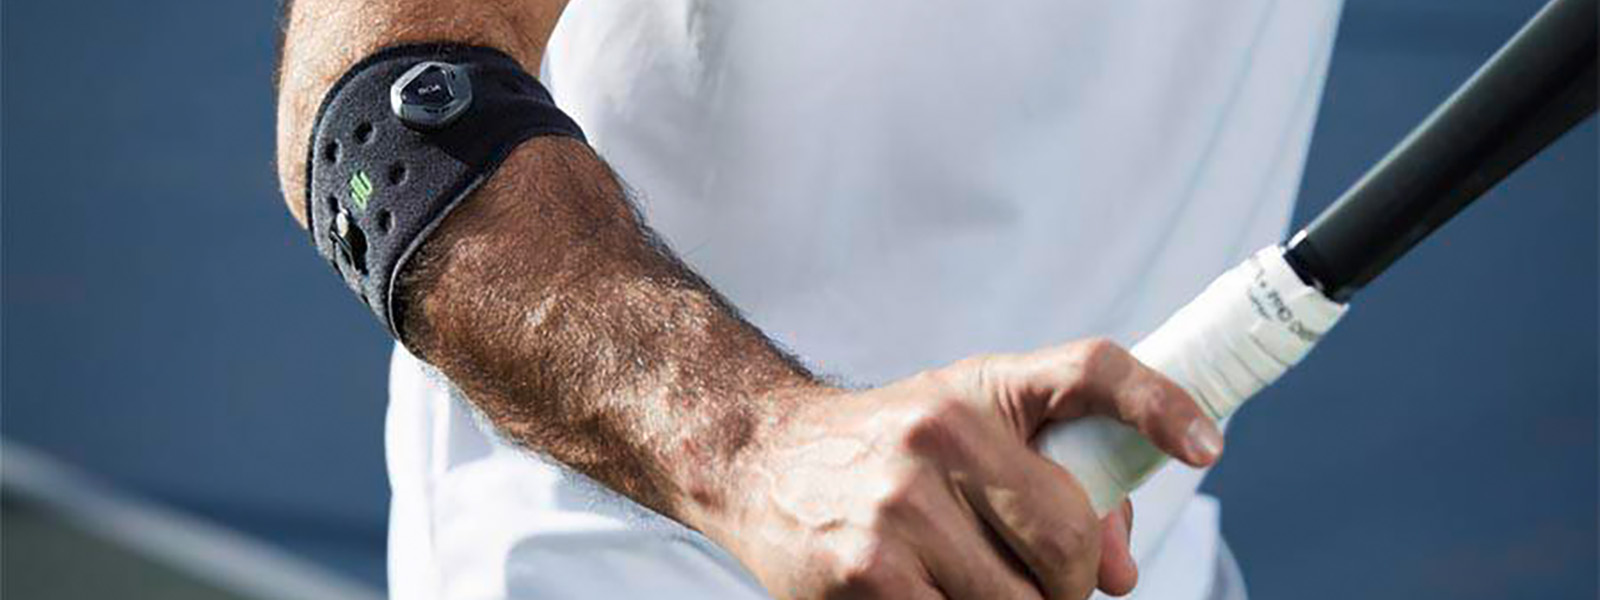 Tennisspieler mit Ellenbogenbandage hat Tennisschläger in der Hand